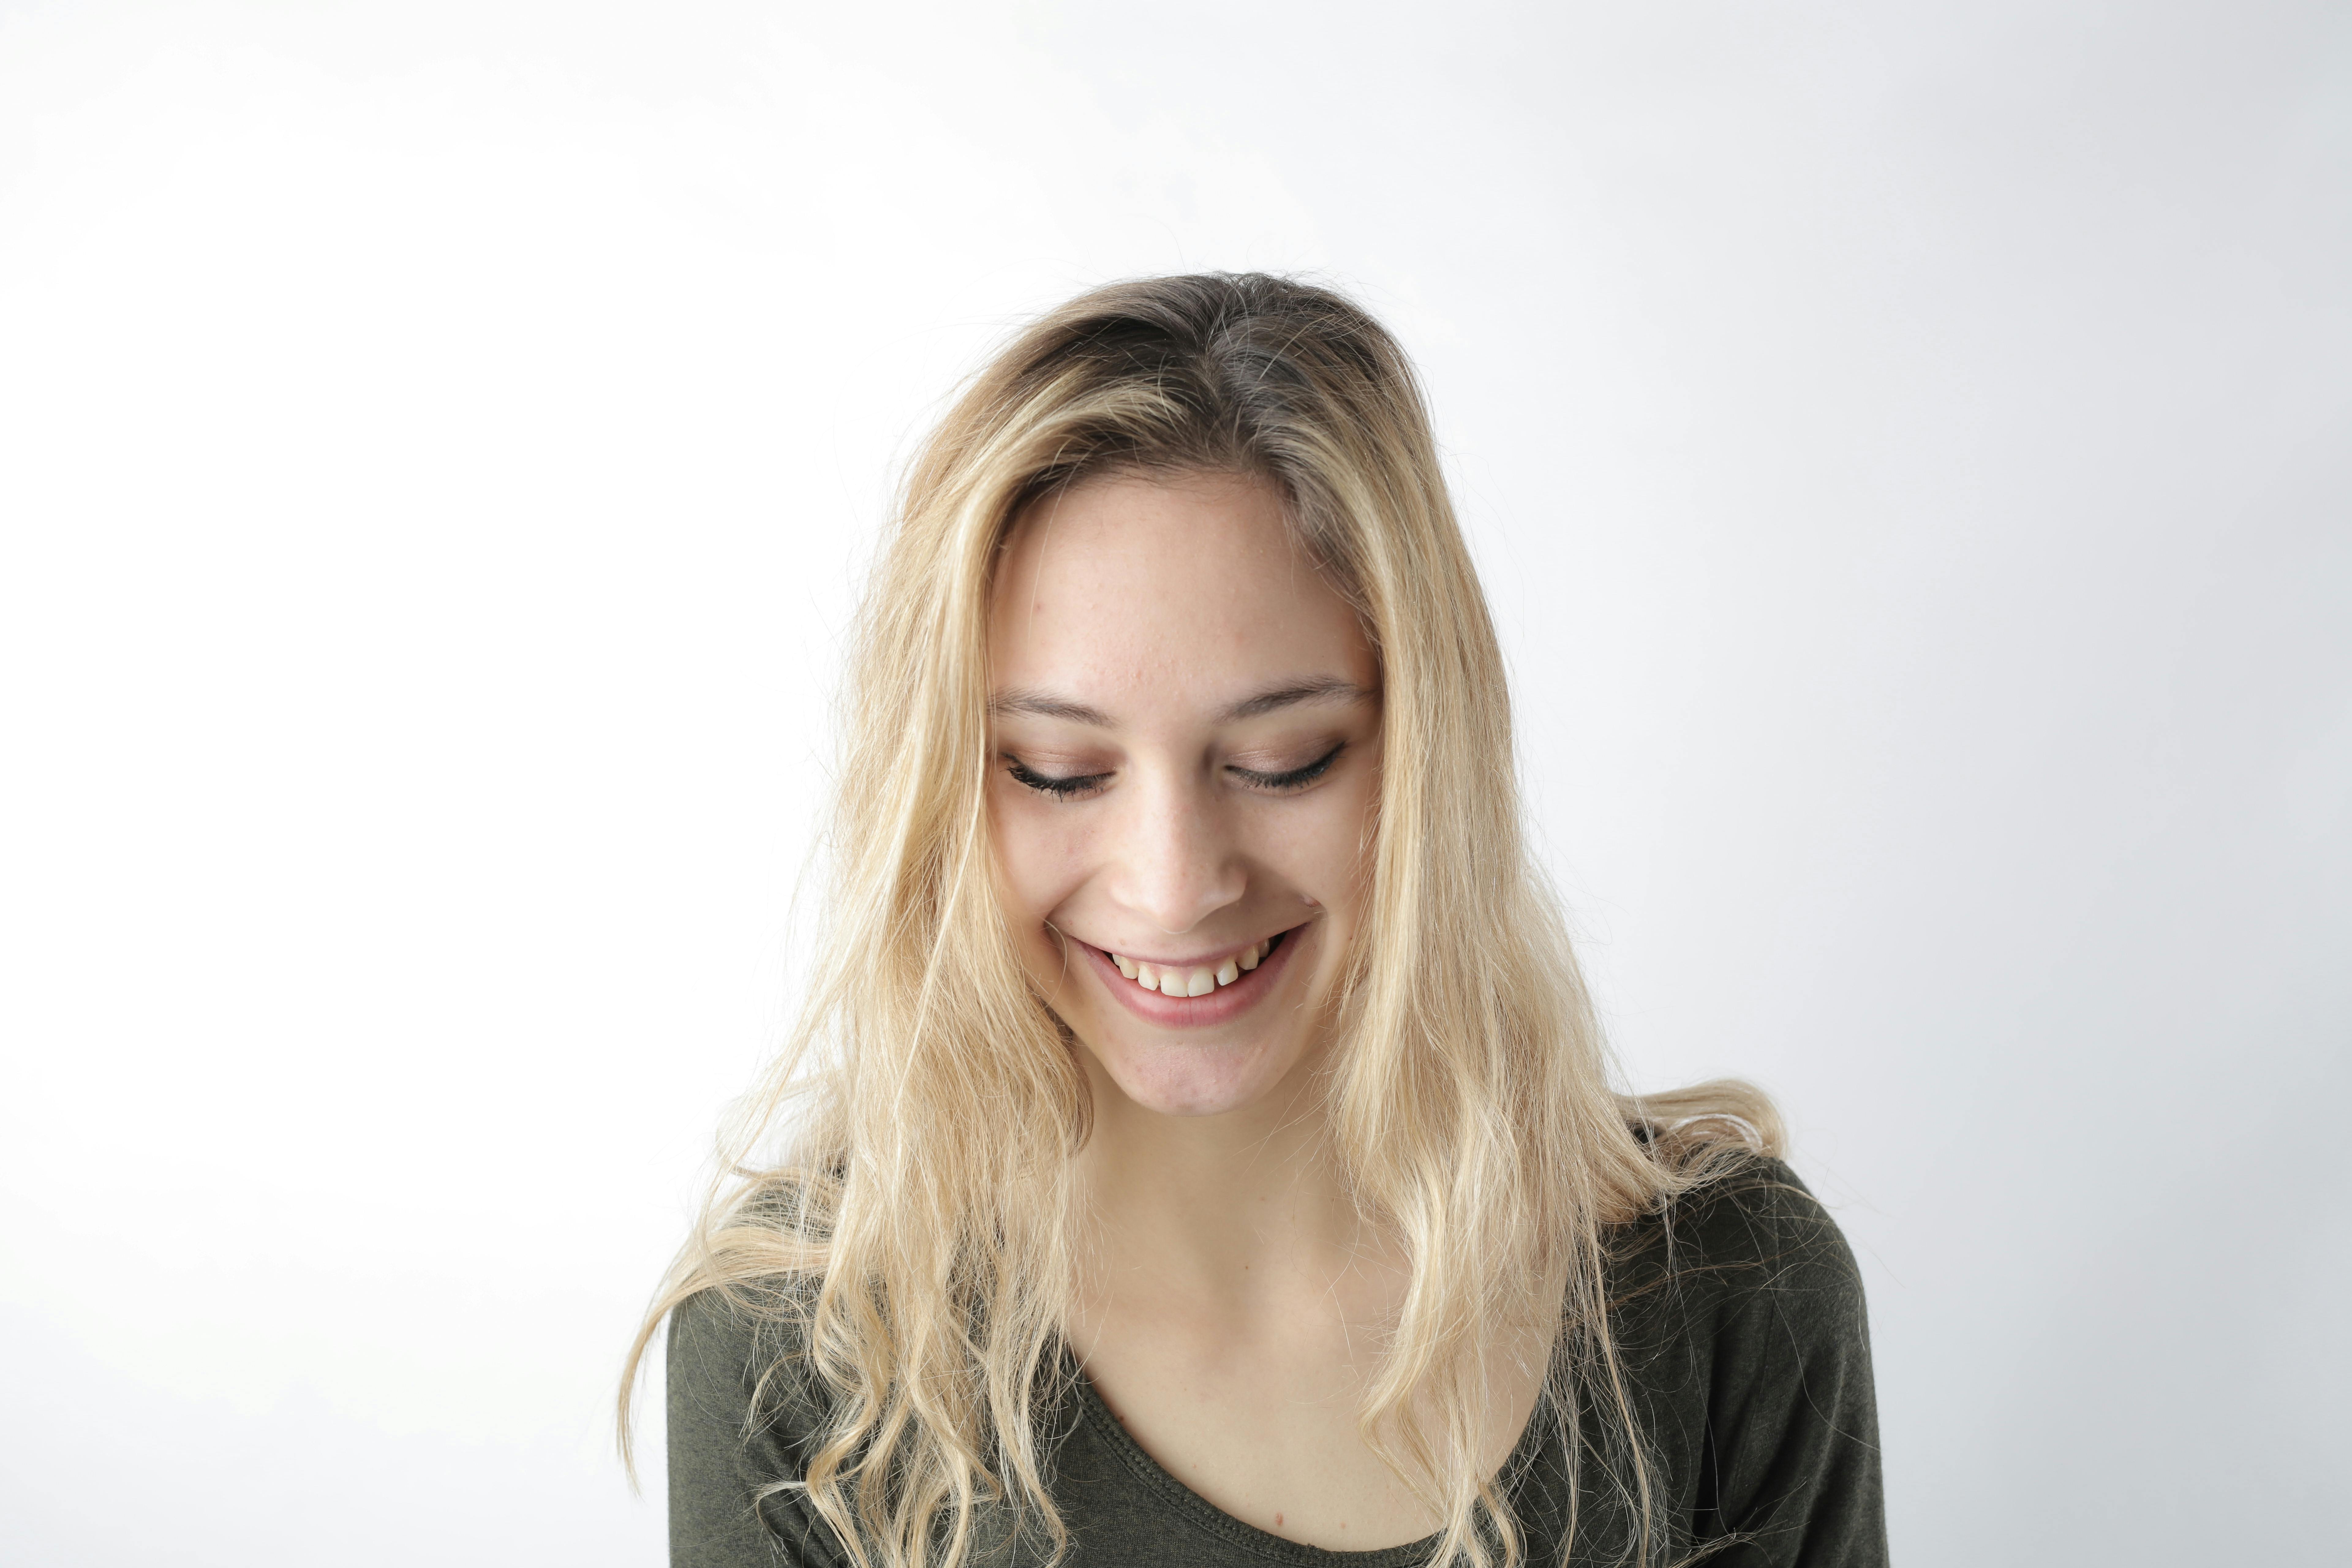 Portrait photo of a woman smiling | Source: Pexels